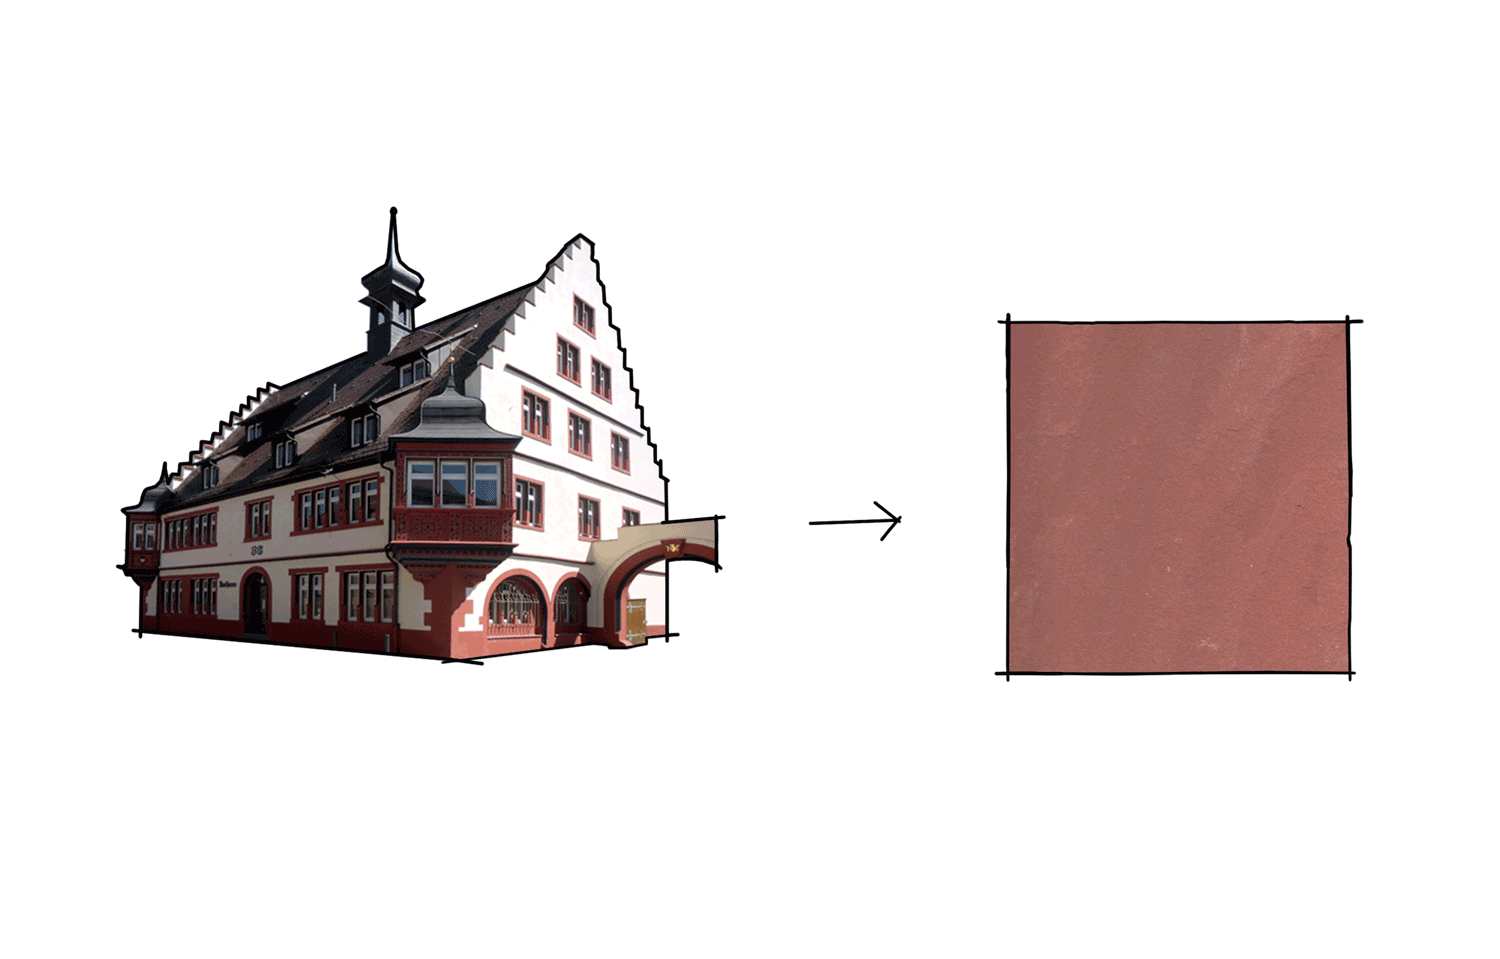 Materialkonzept:  Rot wie der Sandstein des Rathaus